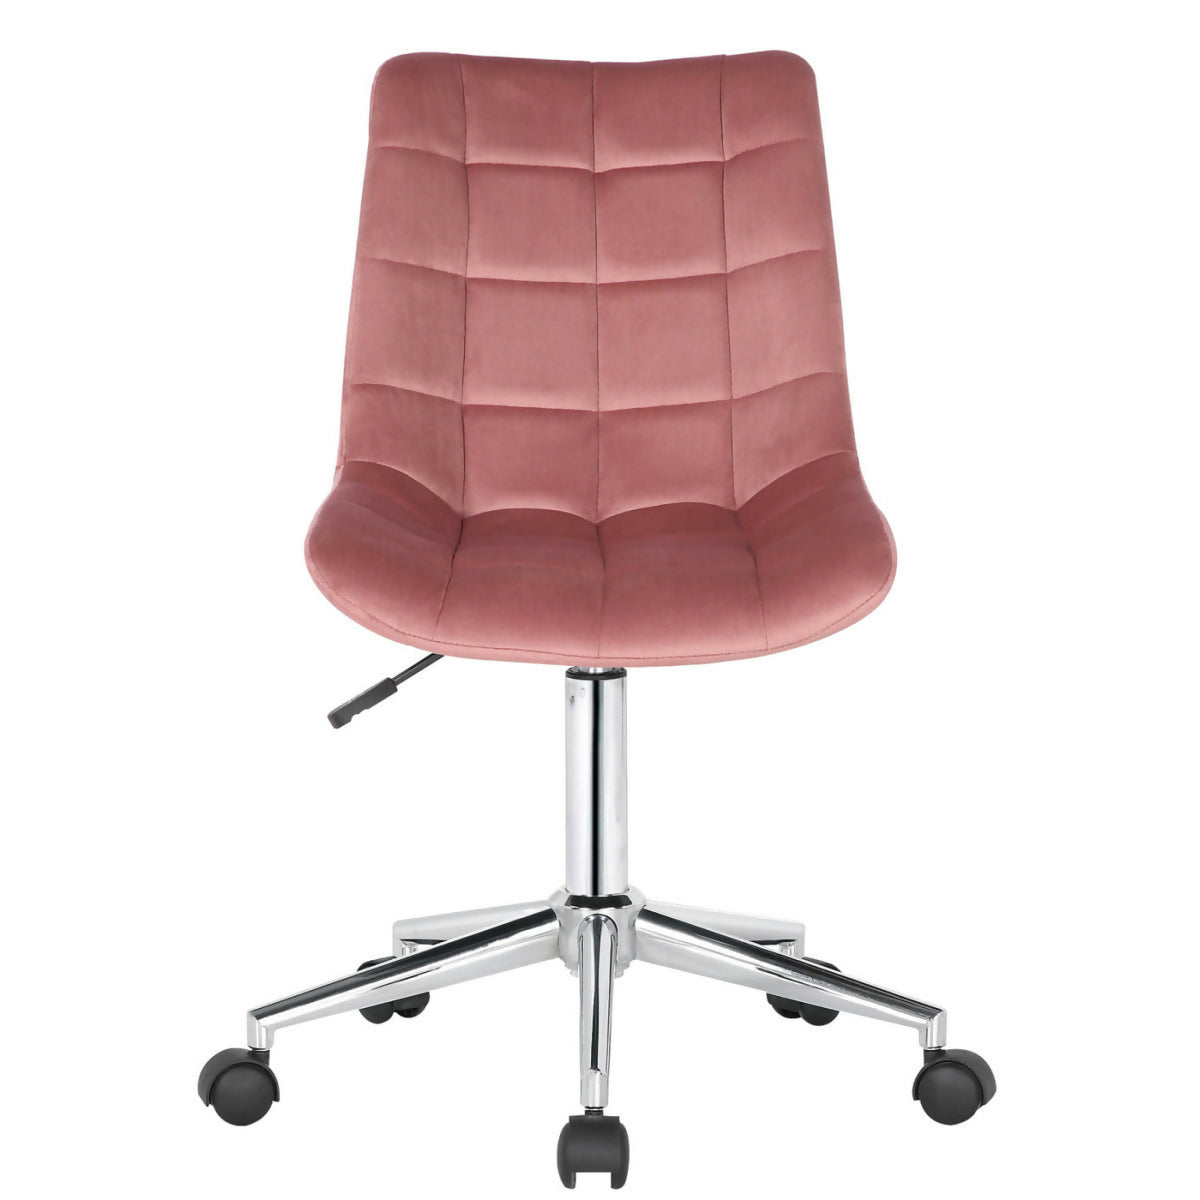 Medford office chair - Pink velvet 